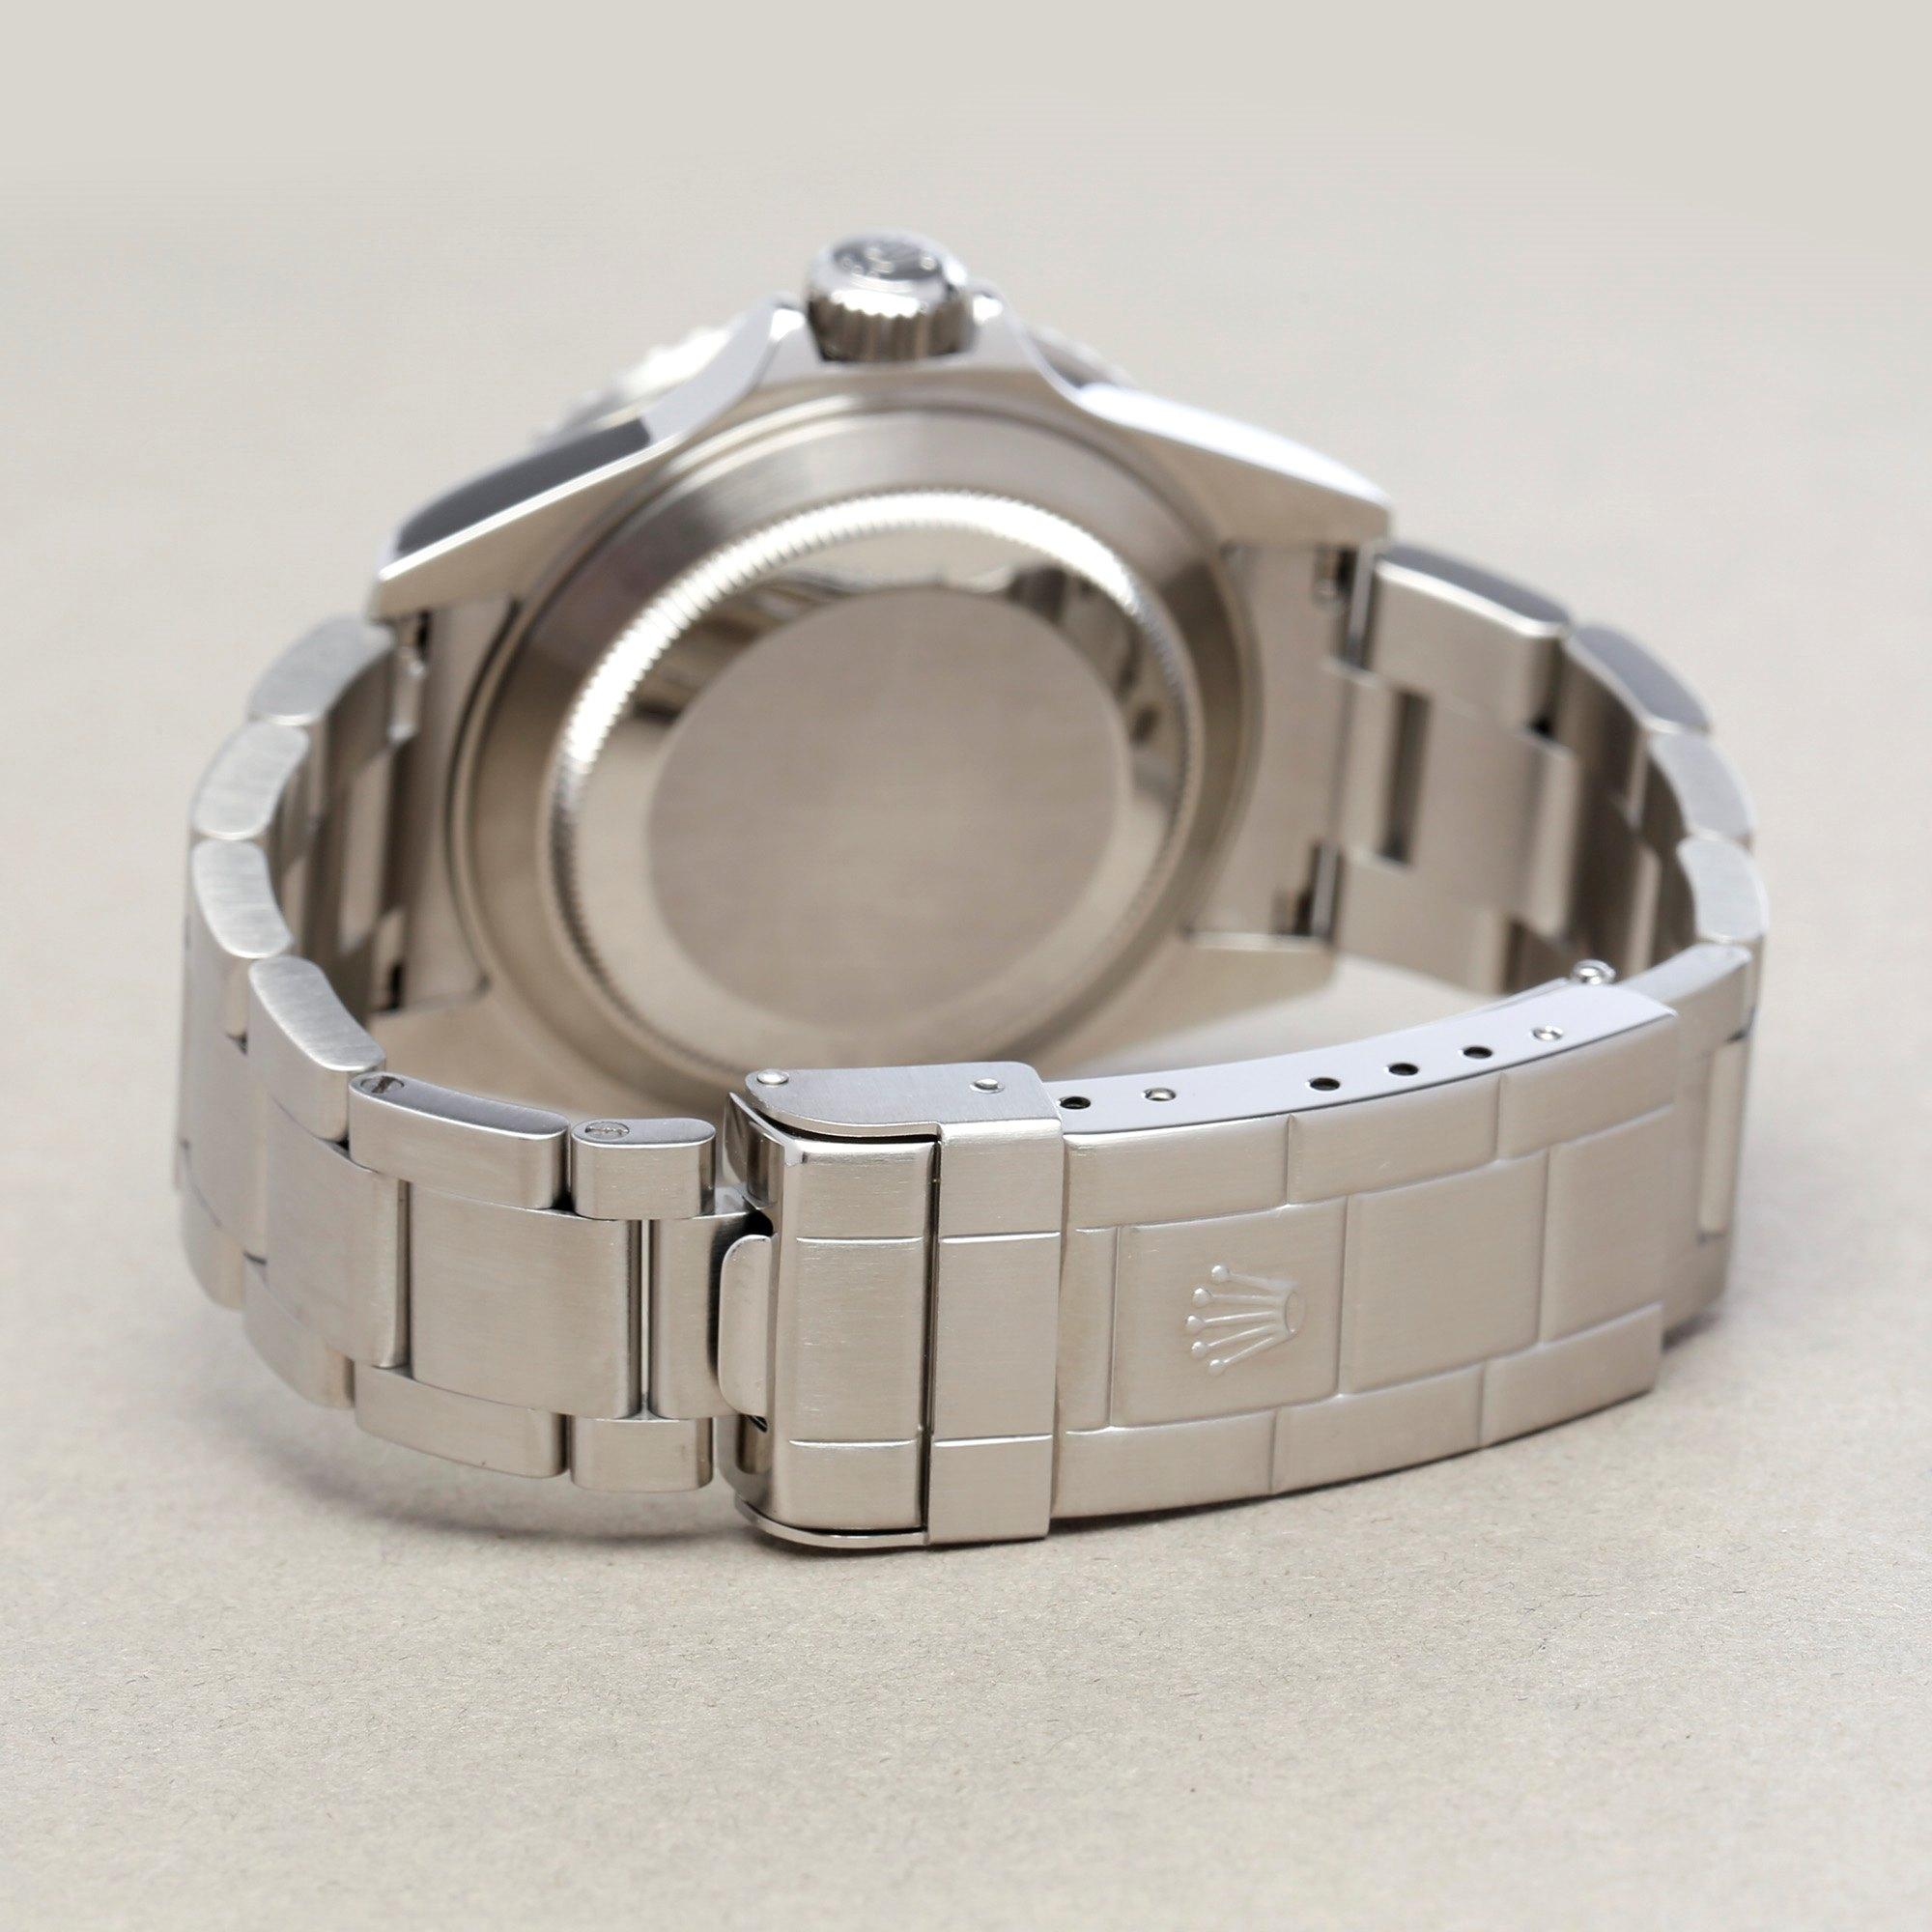 Rolex Submariner Date 16610LV Men's Stainless Steel Kermit' Watch 5